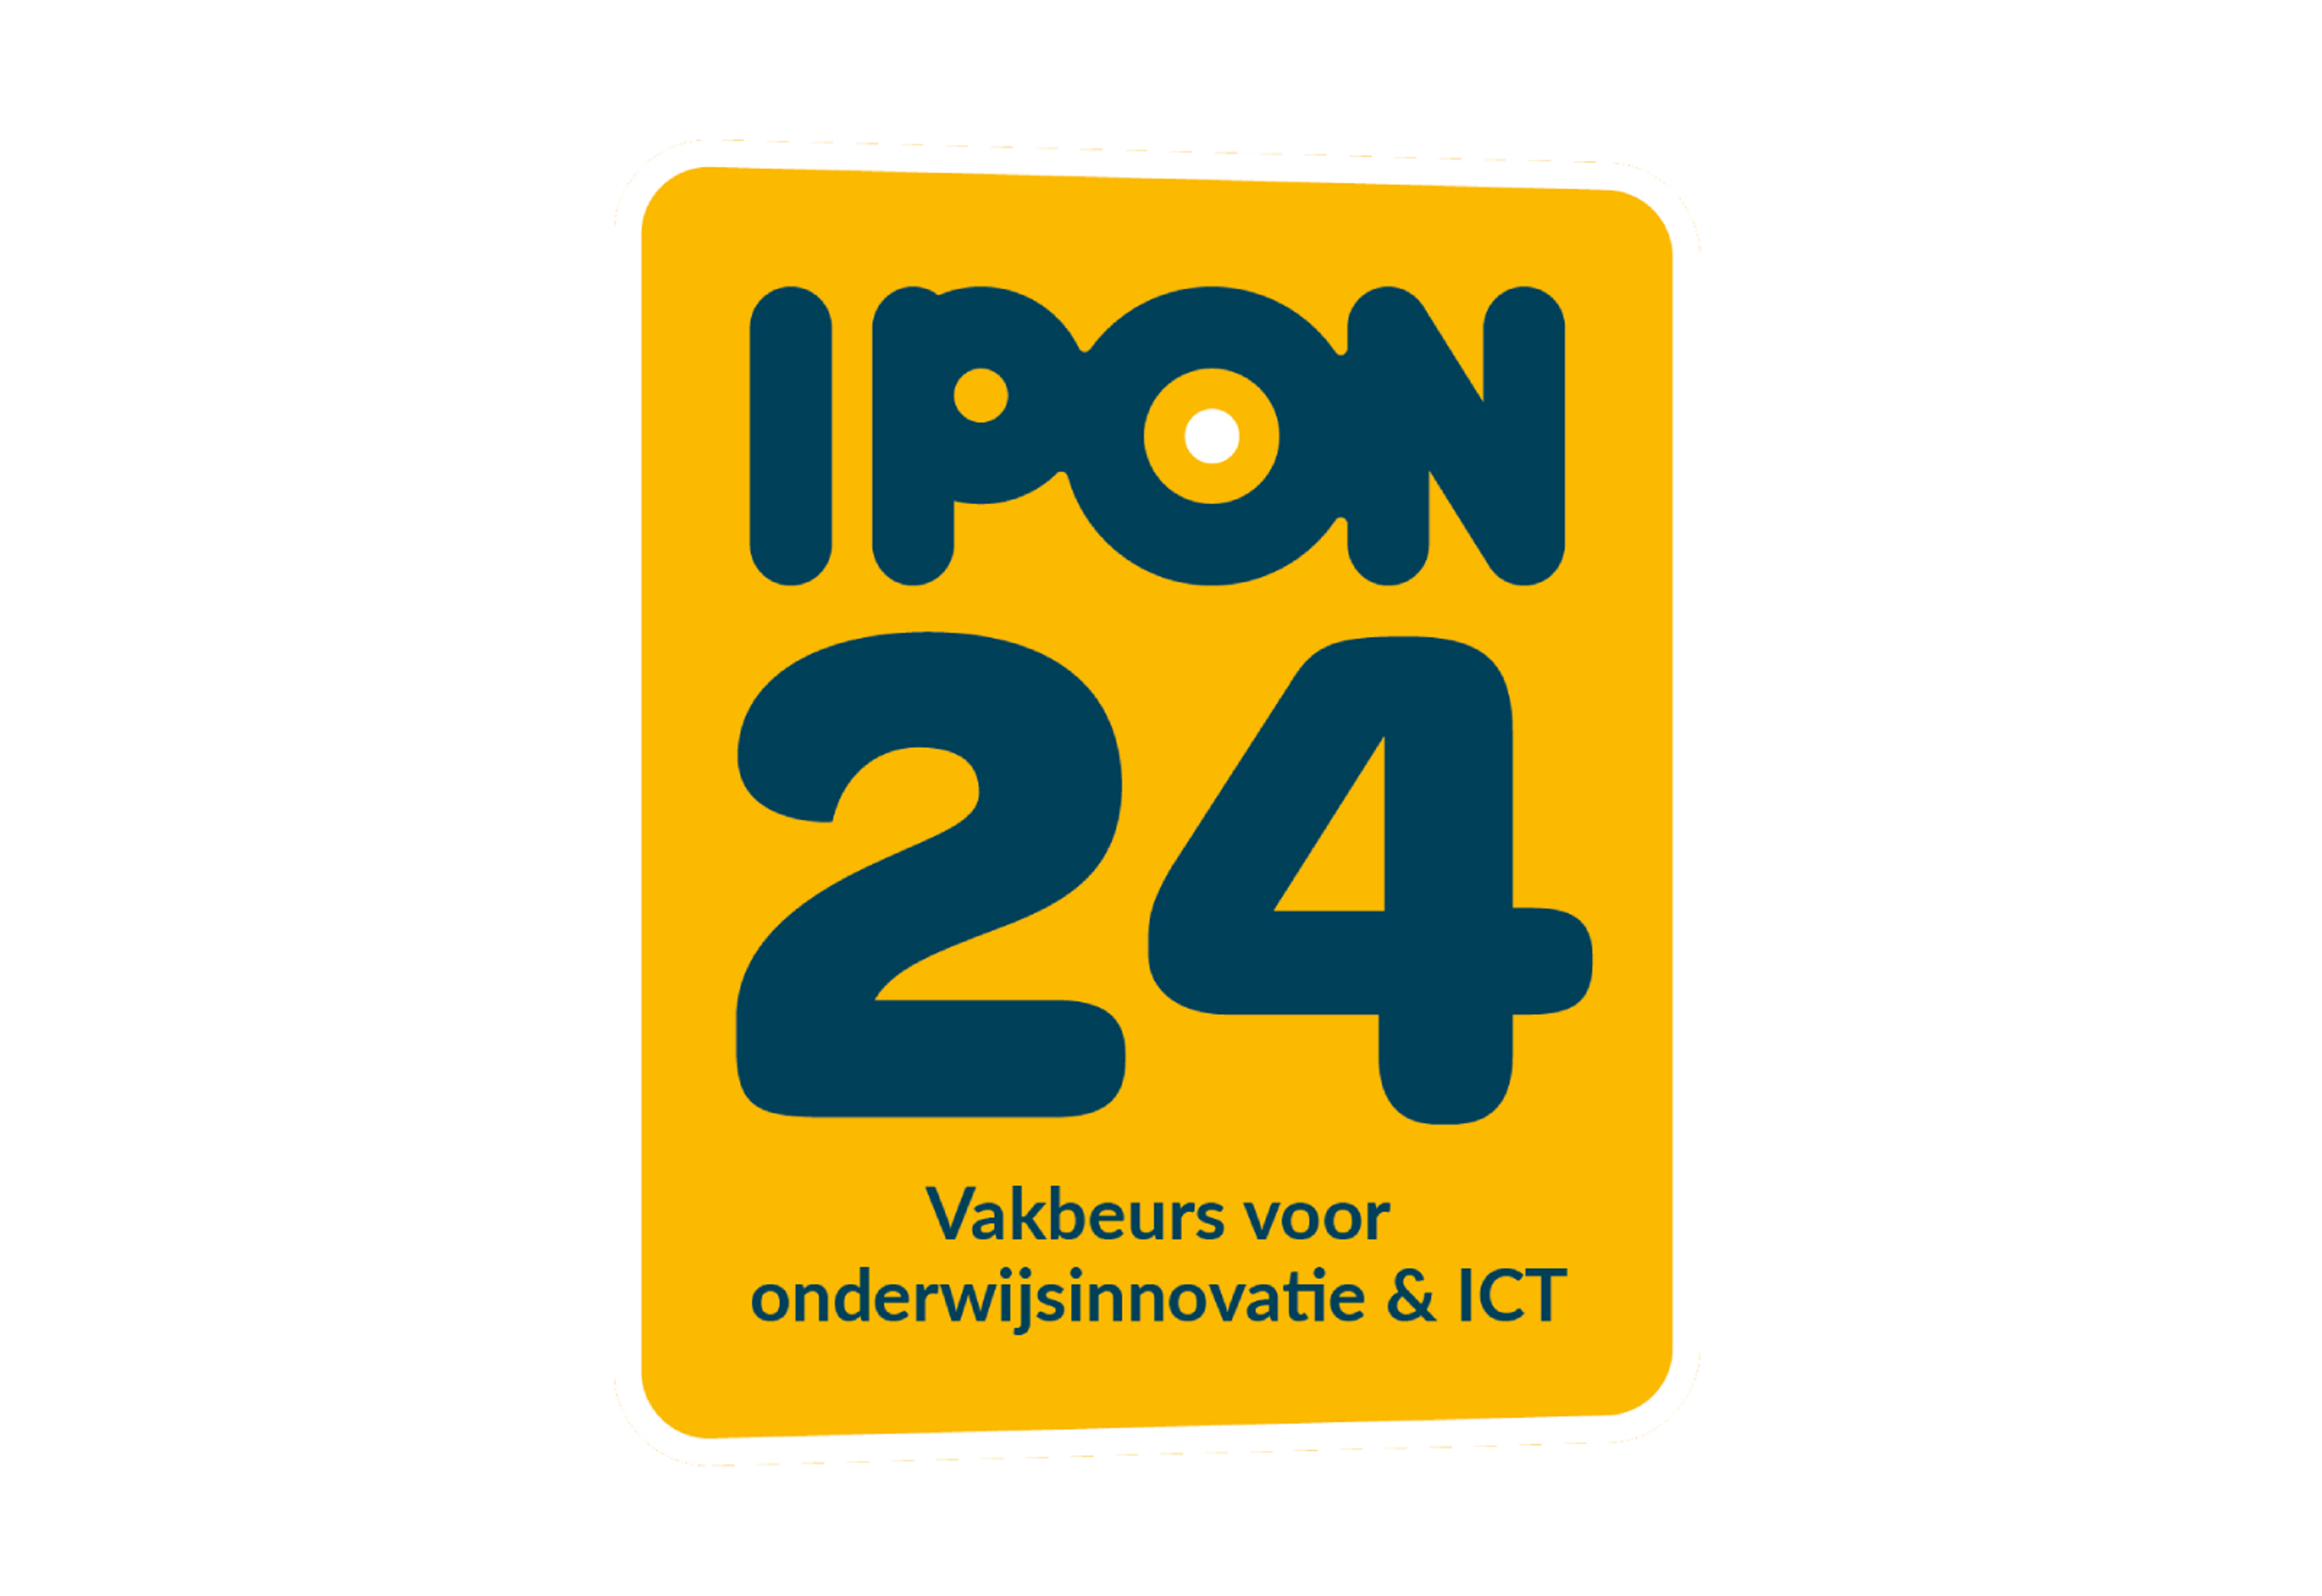 IPON 2024 logo - Vakbeurs voor Onderwijs en Innovatie